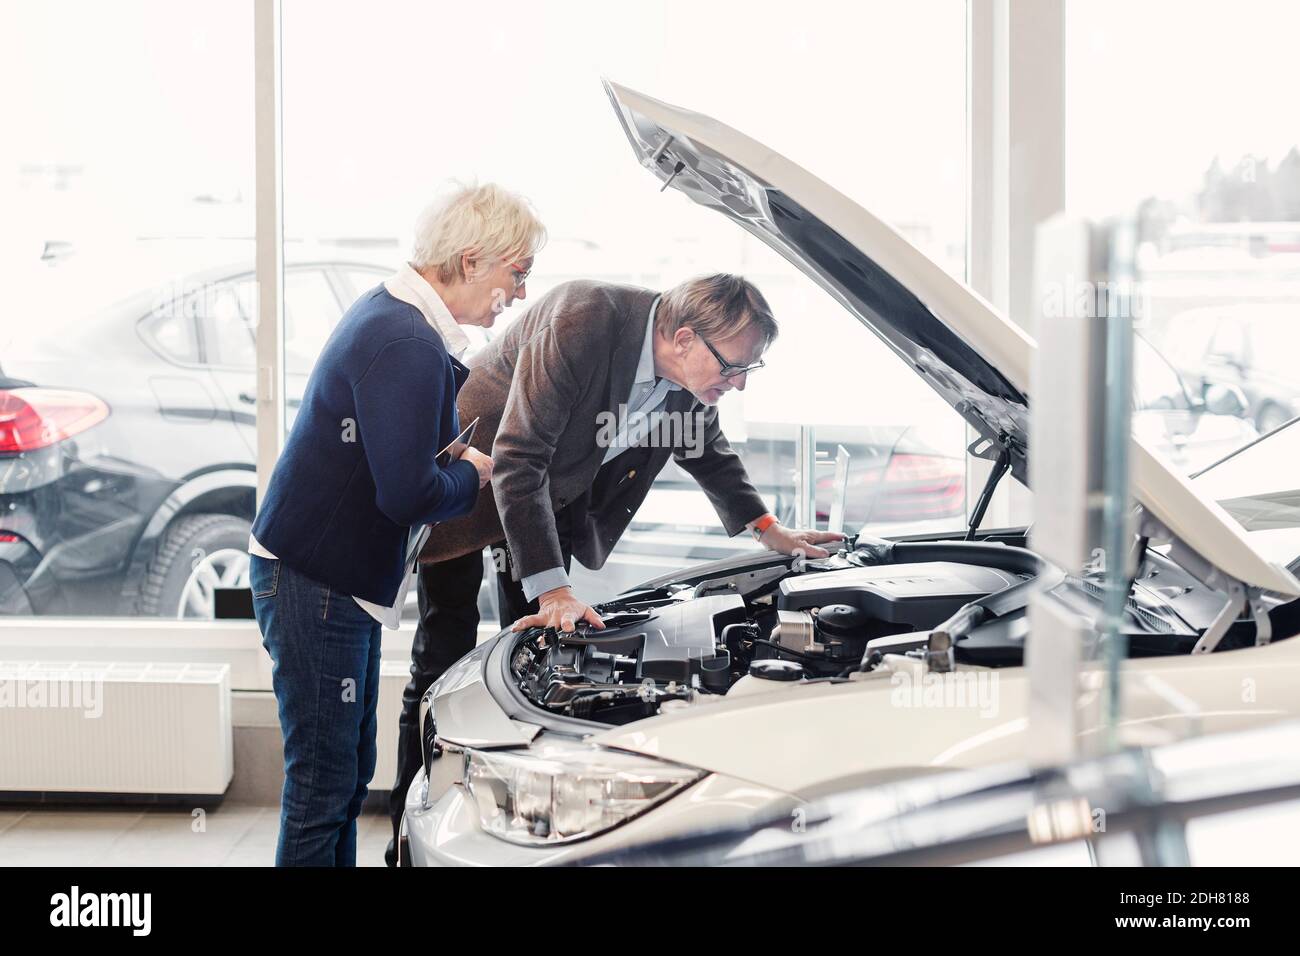 Un couple senior examine le moteur de la voiture dans la salle d'exposition Banque D'Images